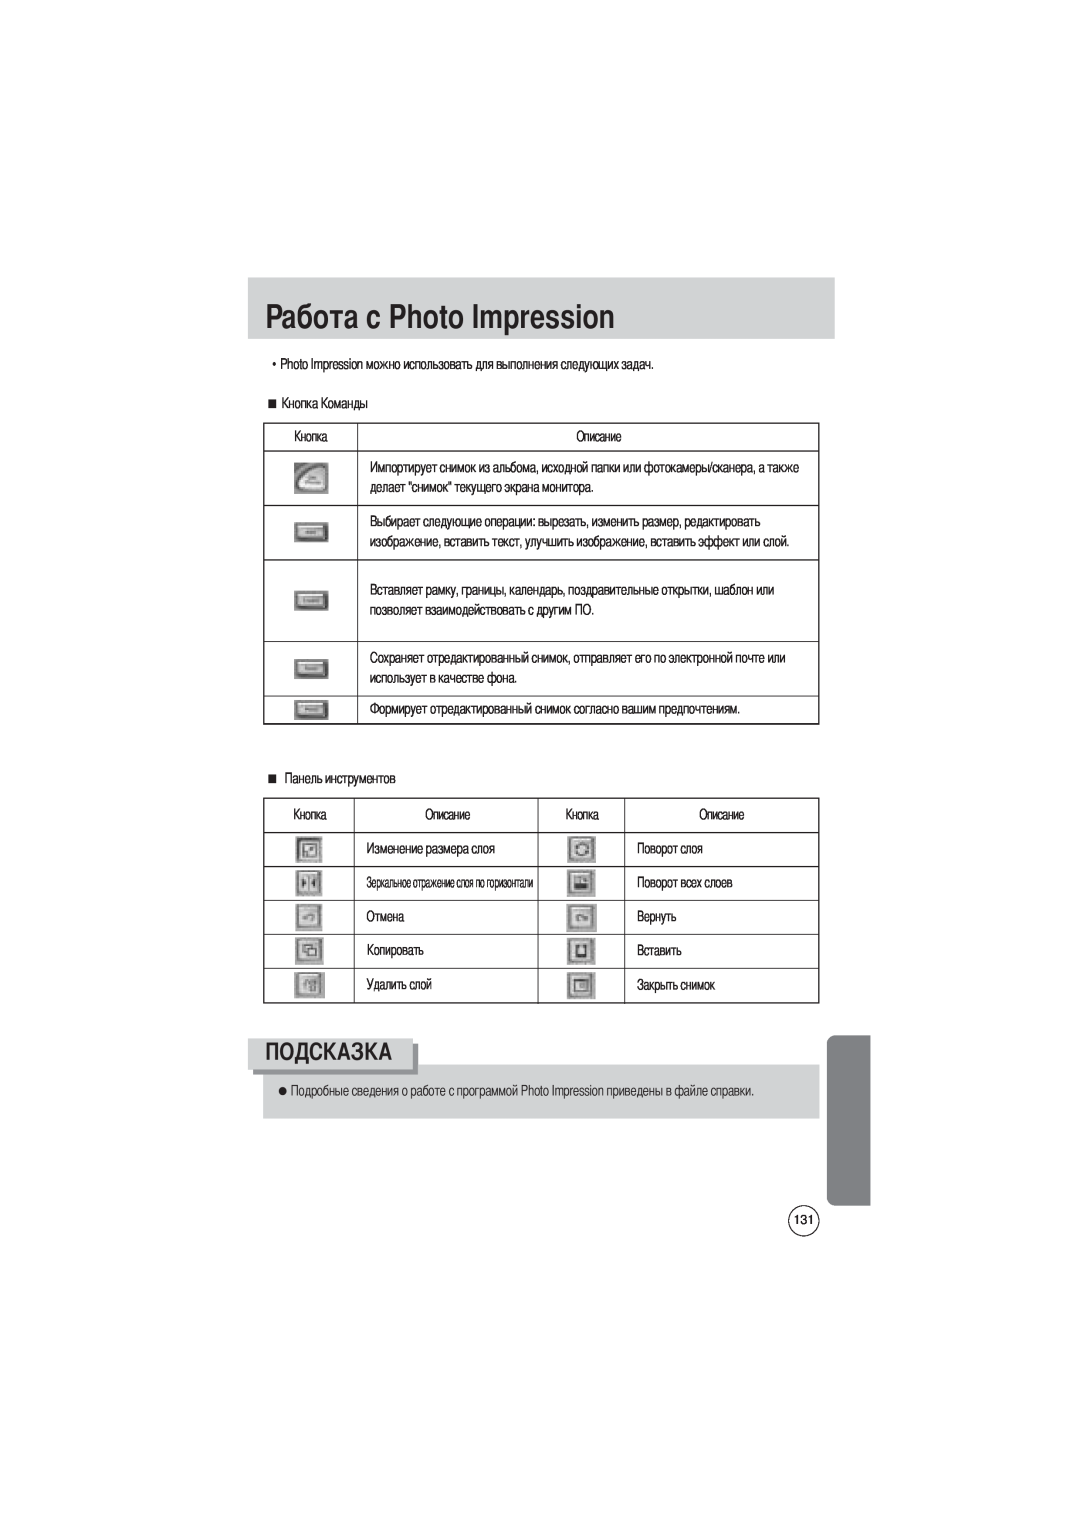 Samsung EC-V700ZUBA/GB manual абота с Photo Impression, Photo Impression можно использовать для выполнения следующих задач 